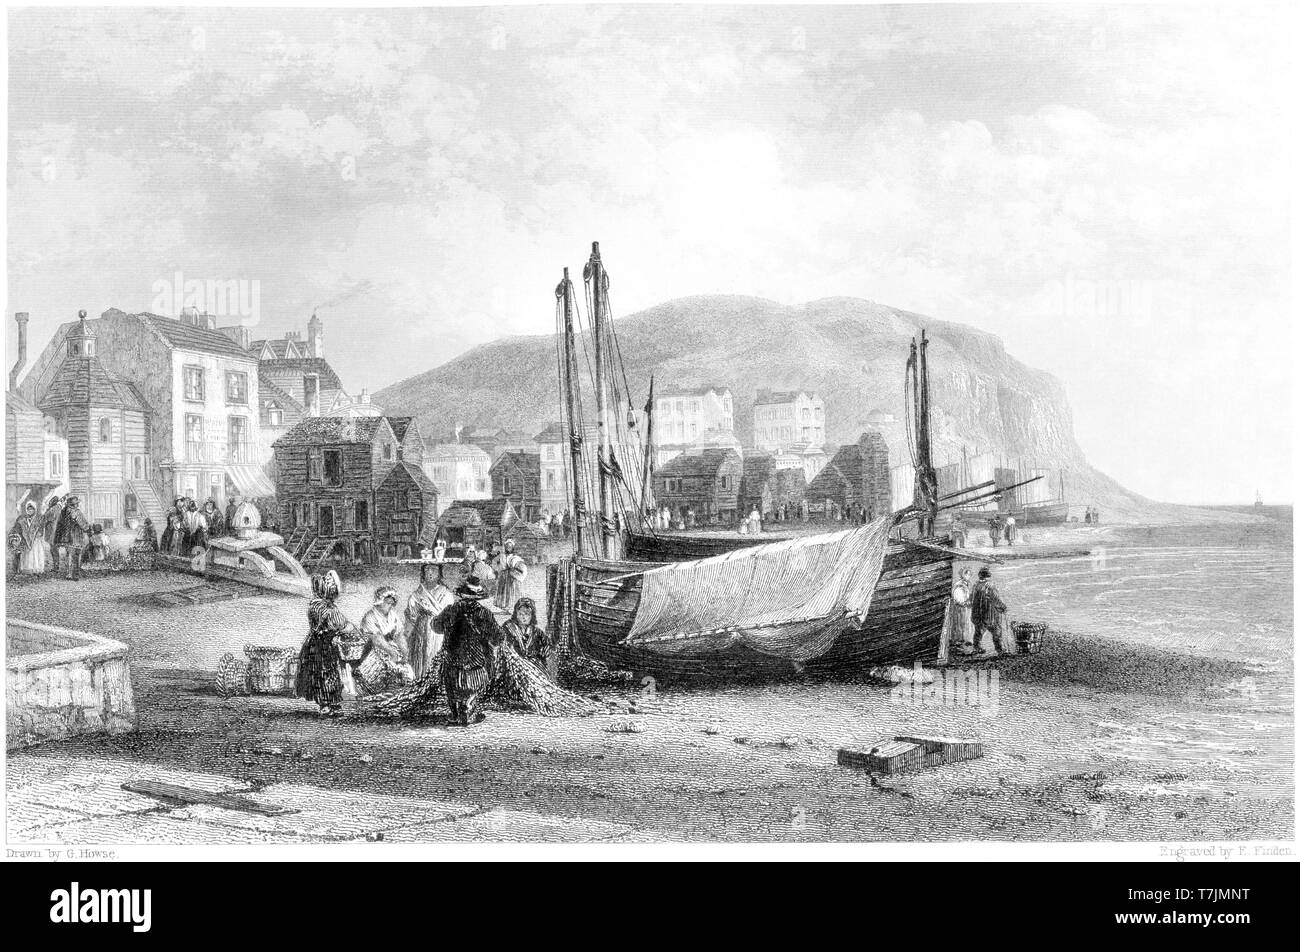 Ein Kupferstich von Hastings - Blick auf den Strand bei hoher Auflösung gescannt aus einem Buch 1842 veröffentlicht. Glaubten copyright frei. Stockfoto